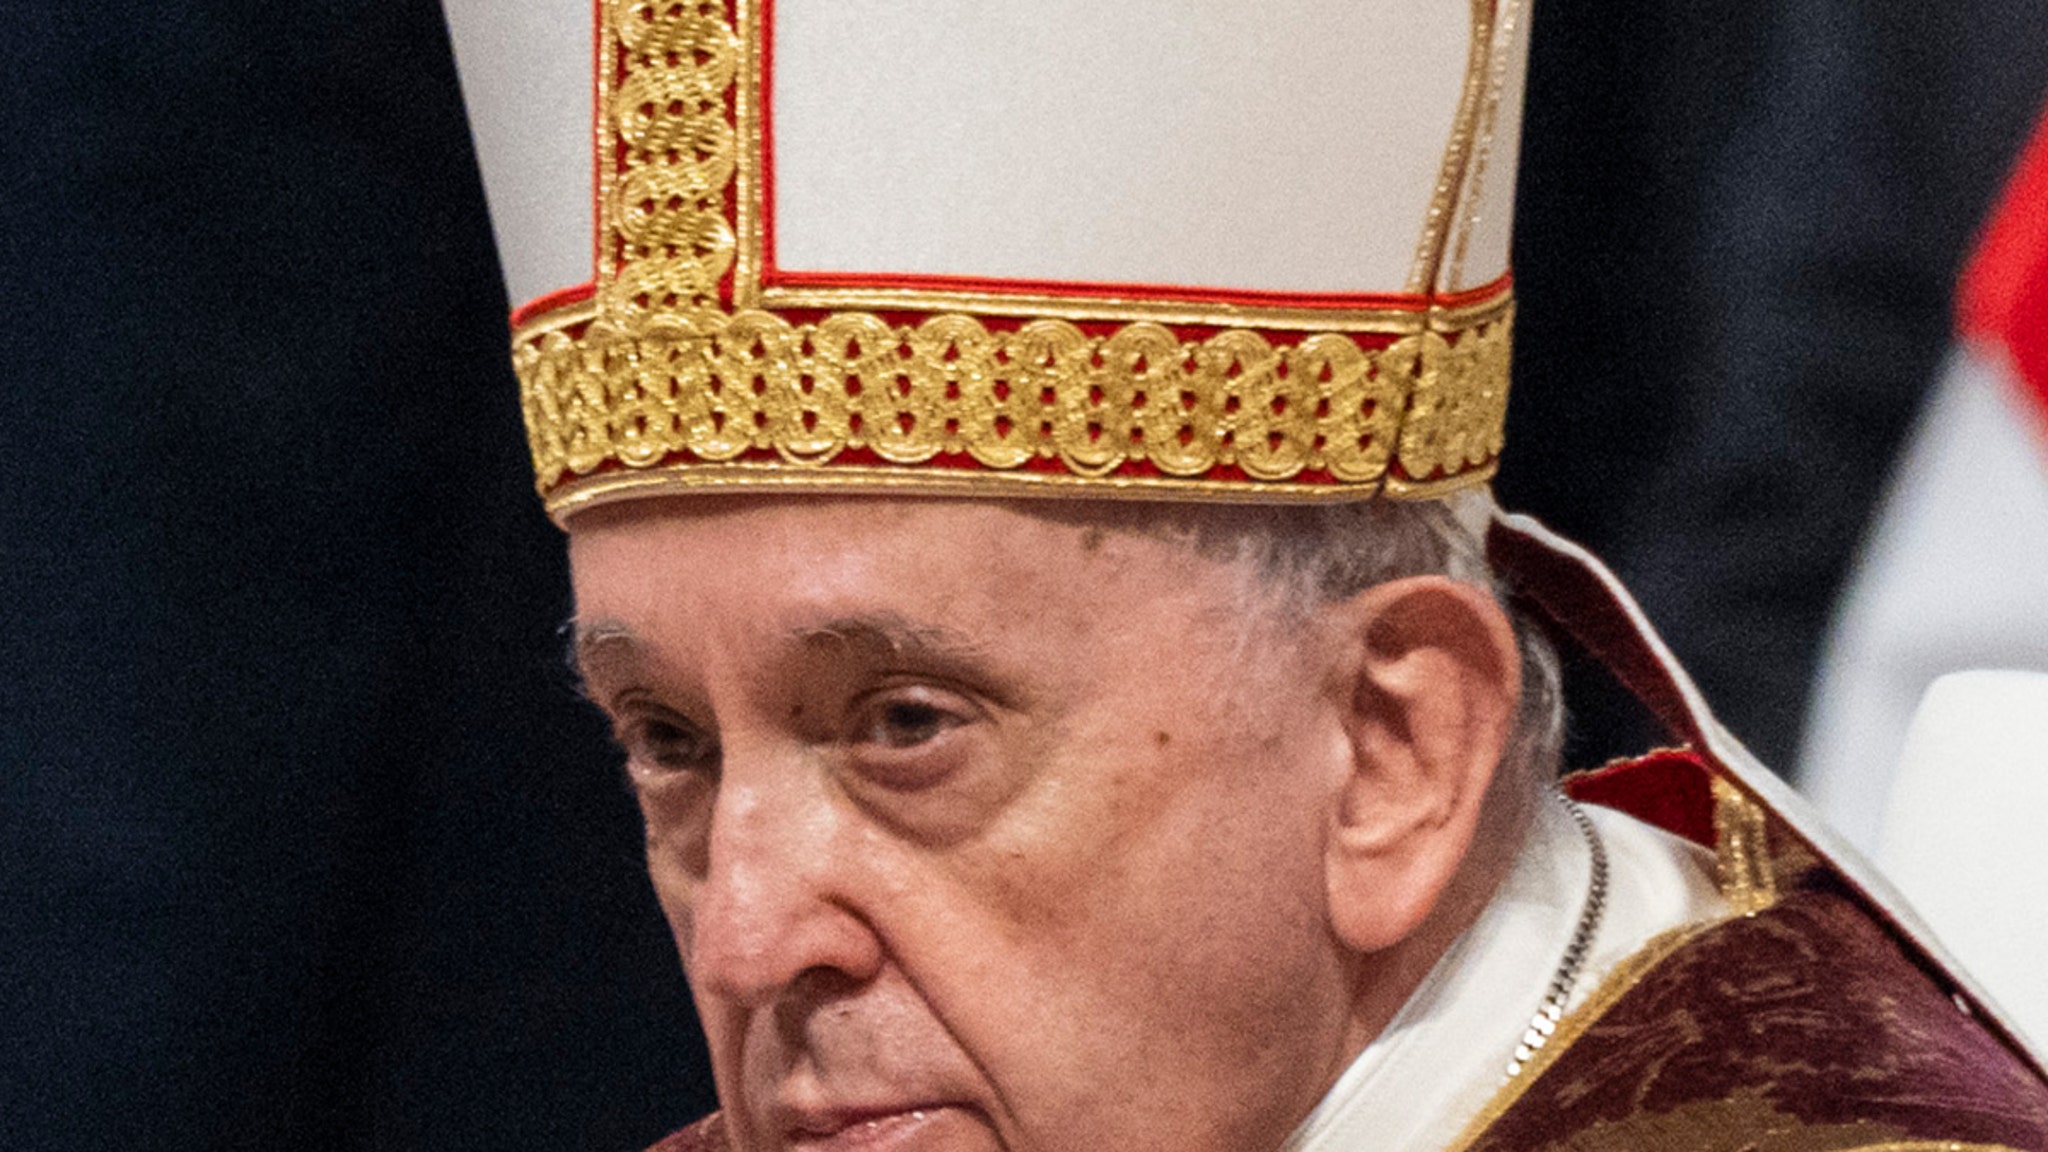 البابا فرنسيس: الإجهاض مثل توظيف قاتل محترف